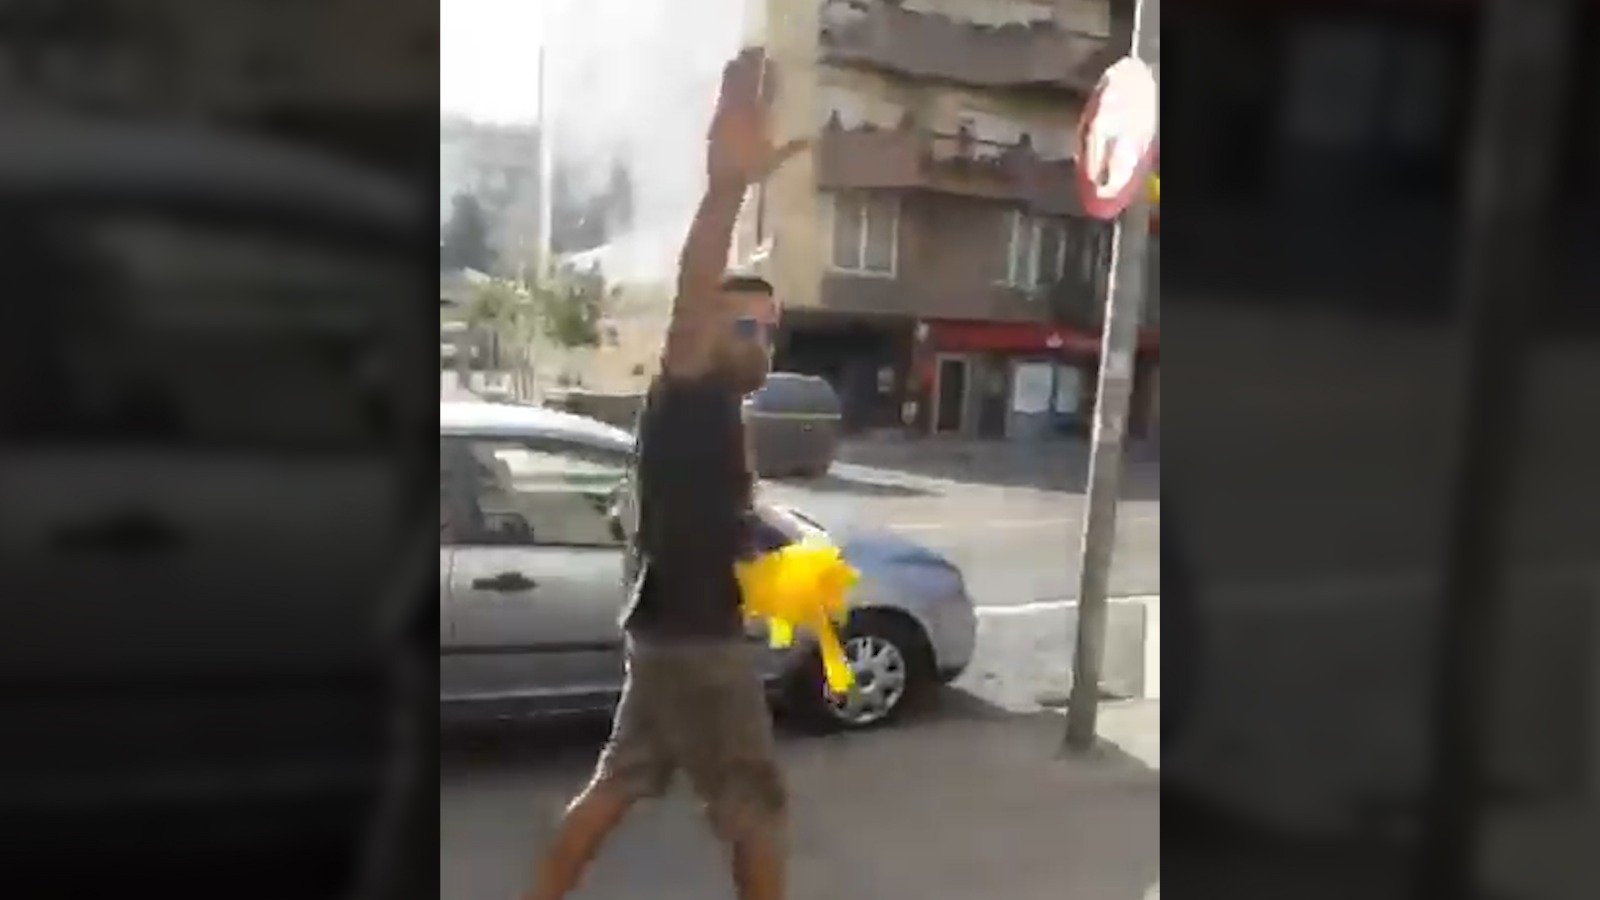 Dos ultras arrancan lazos amarillos mientras insultan a inmigrantes en Vic